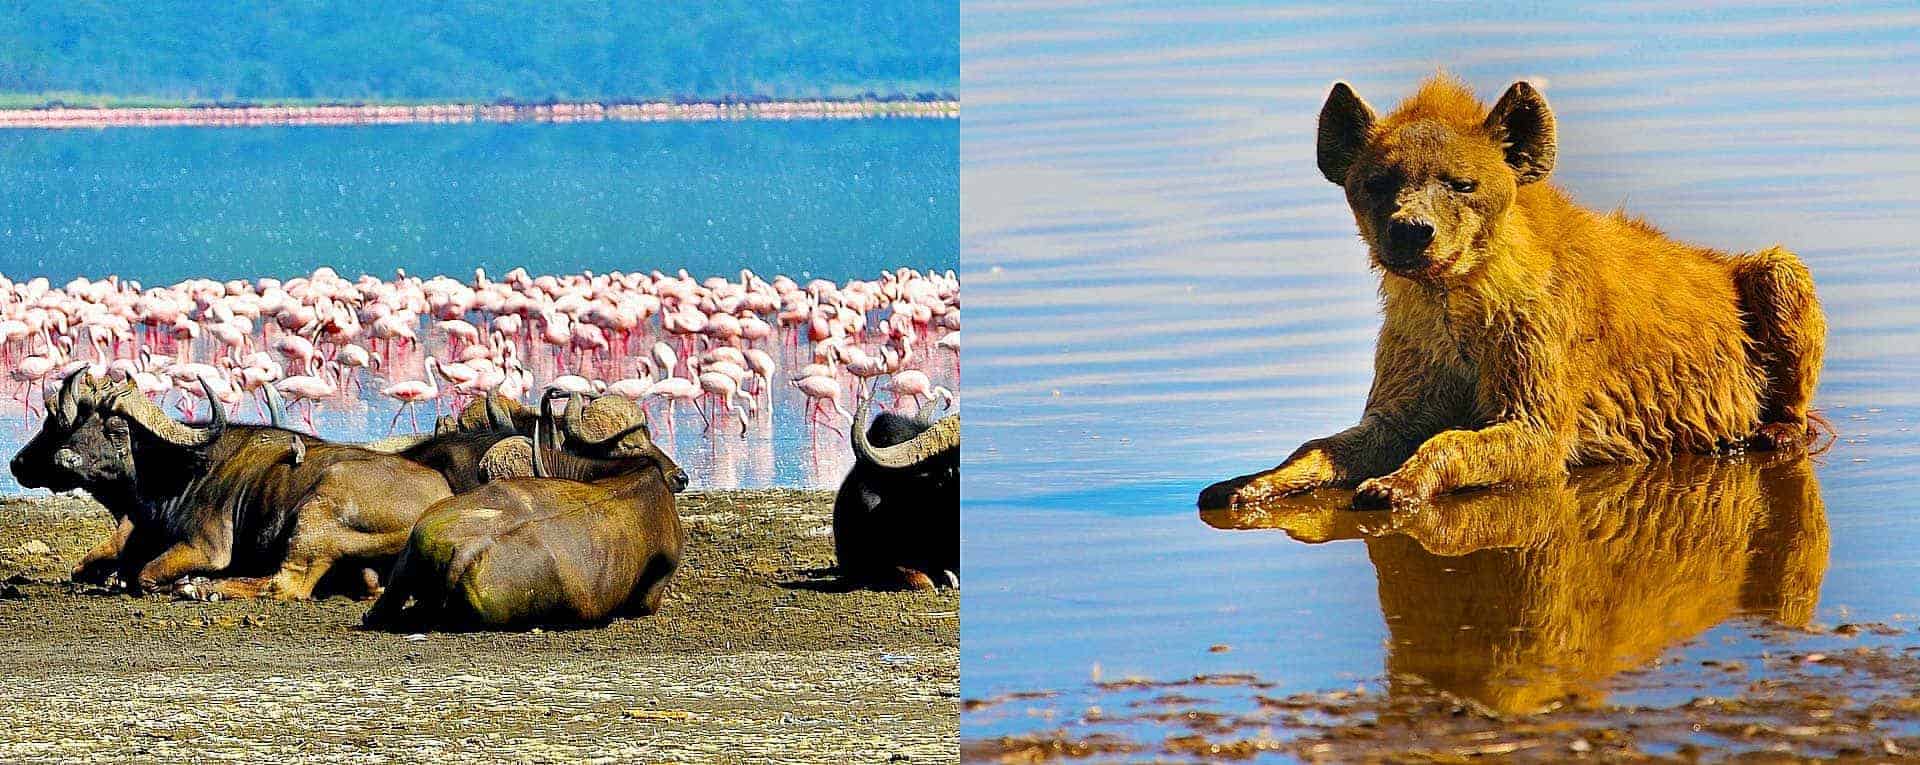 AfricanMecca Tour & Safari Activities In Lake Nakuru In Kenya